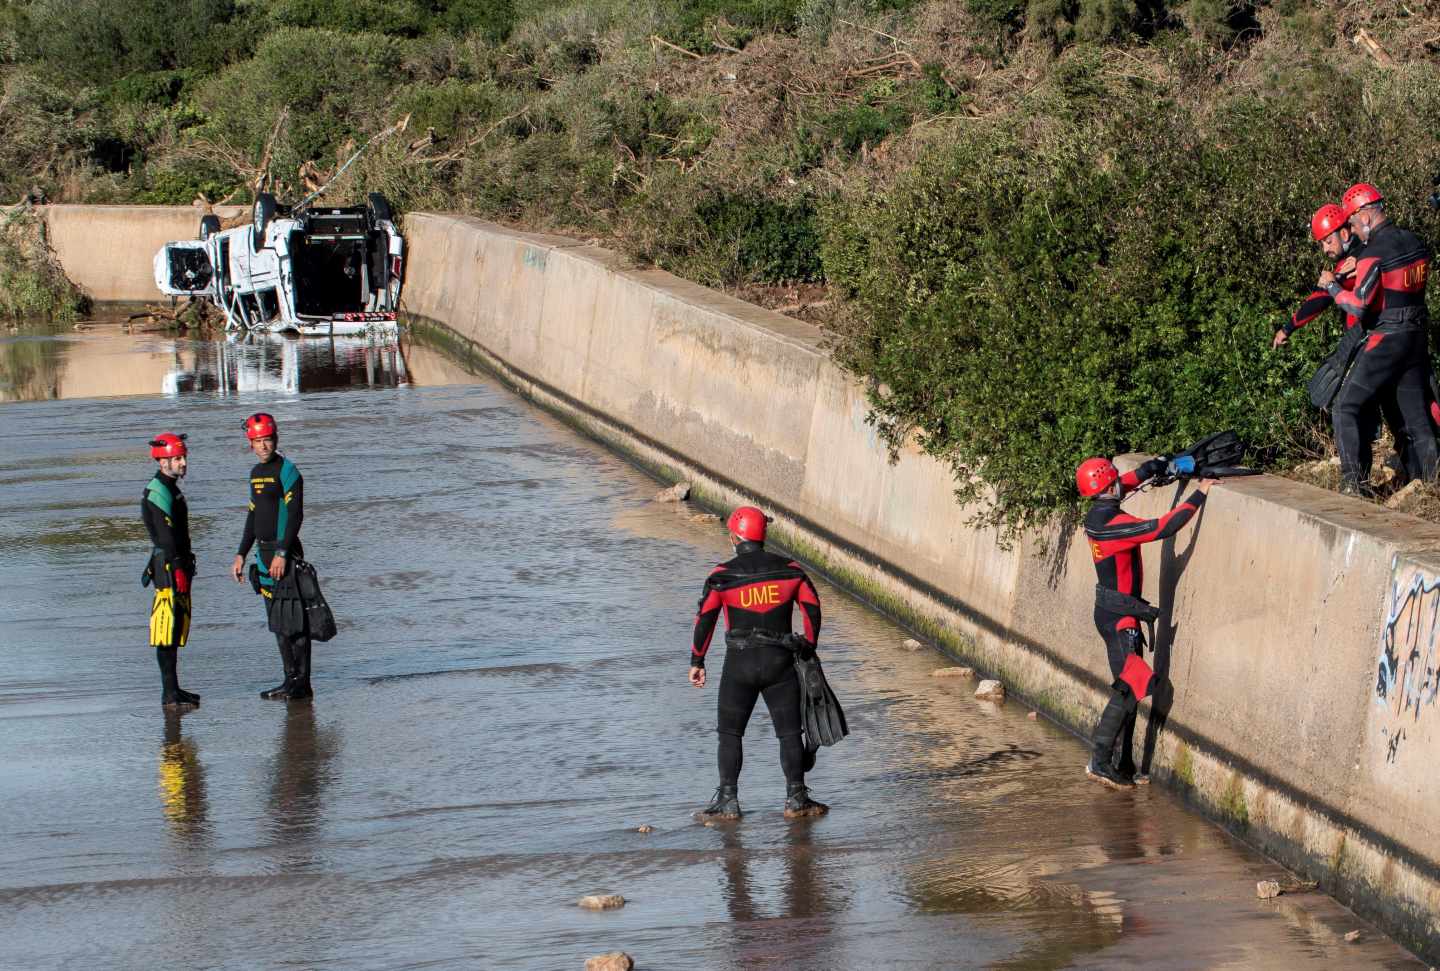 Los equipos de rescate de la Unidad Militar de Emergencias trabajando en la búsqueda de los desaparecidos en Mallorca.